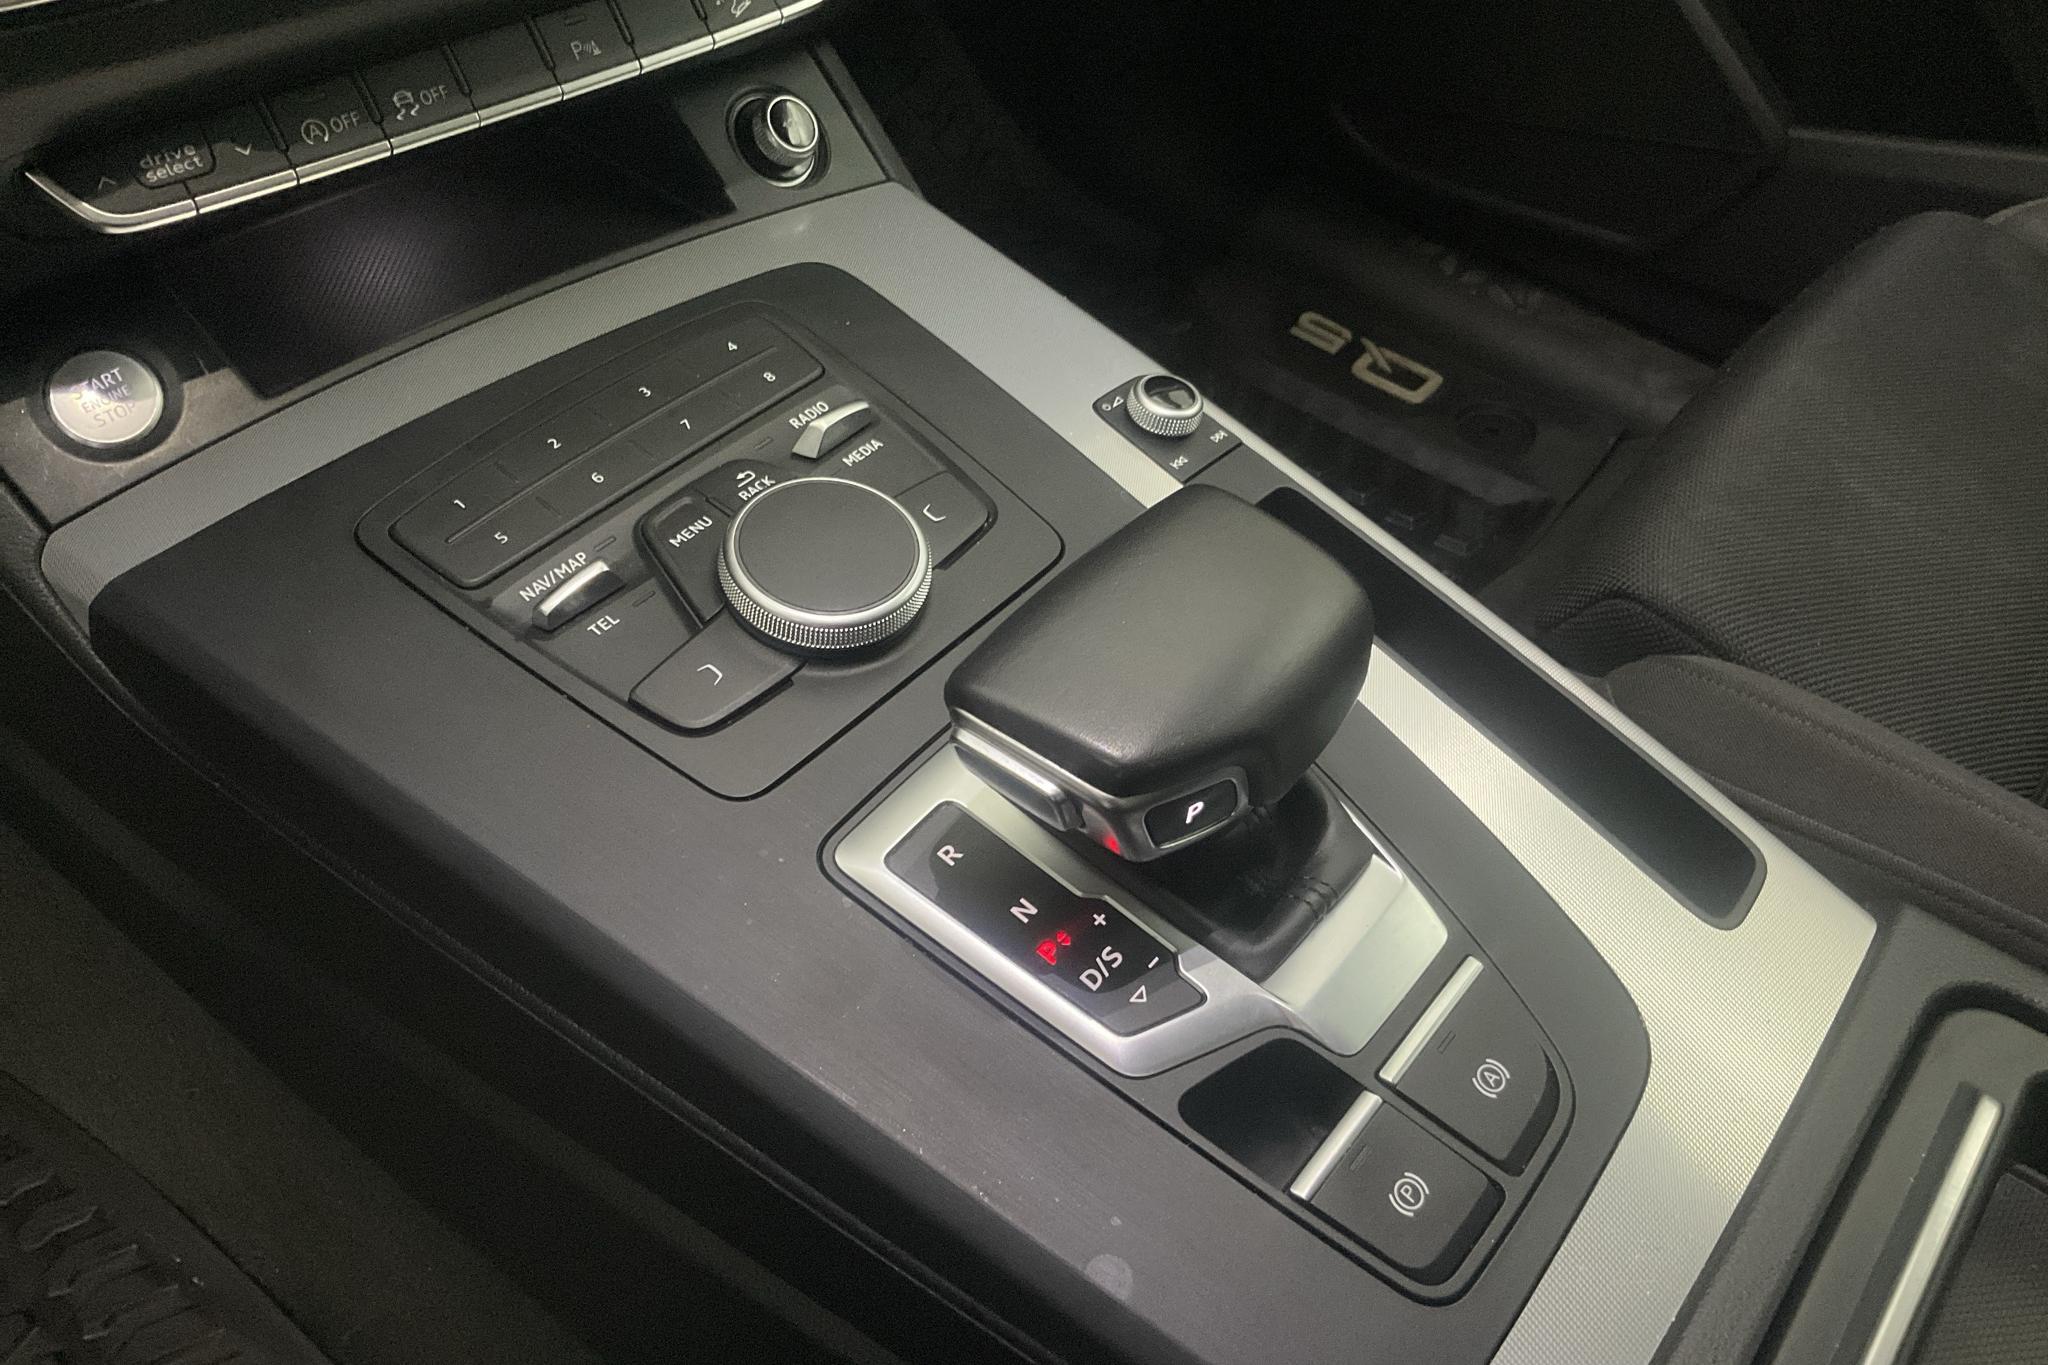 Audi Q5 2.0 TDI quattro (190hk) - 9 453 mil - Automat - vit - 2018